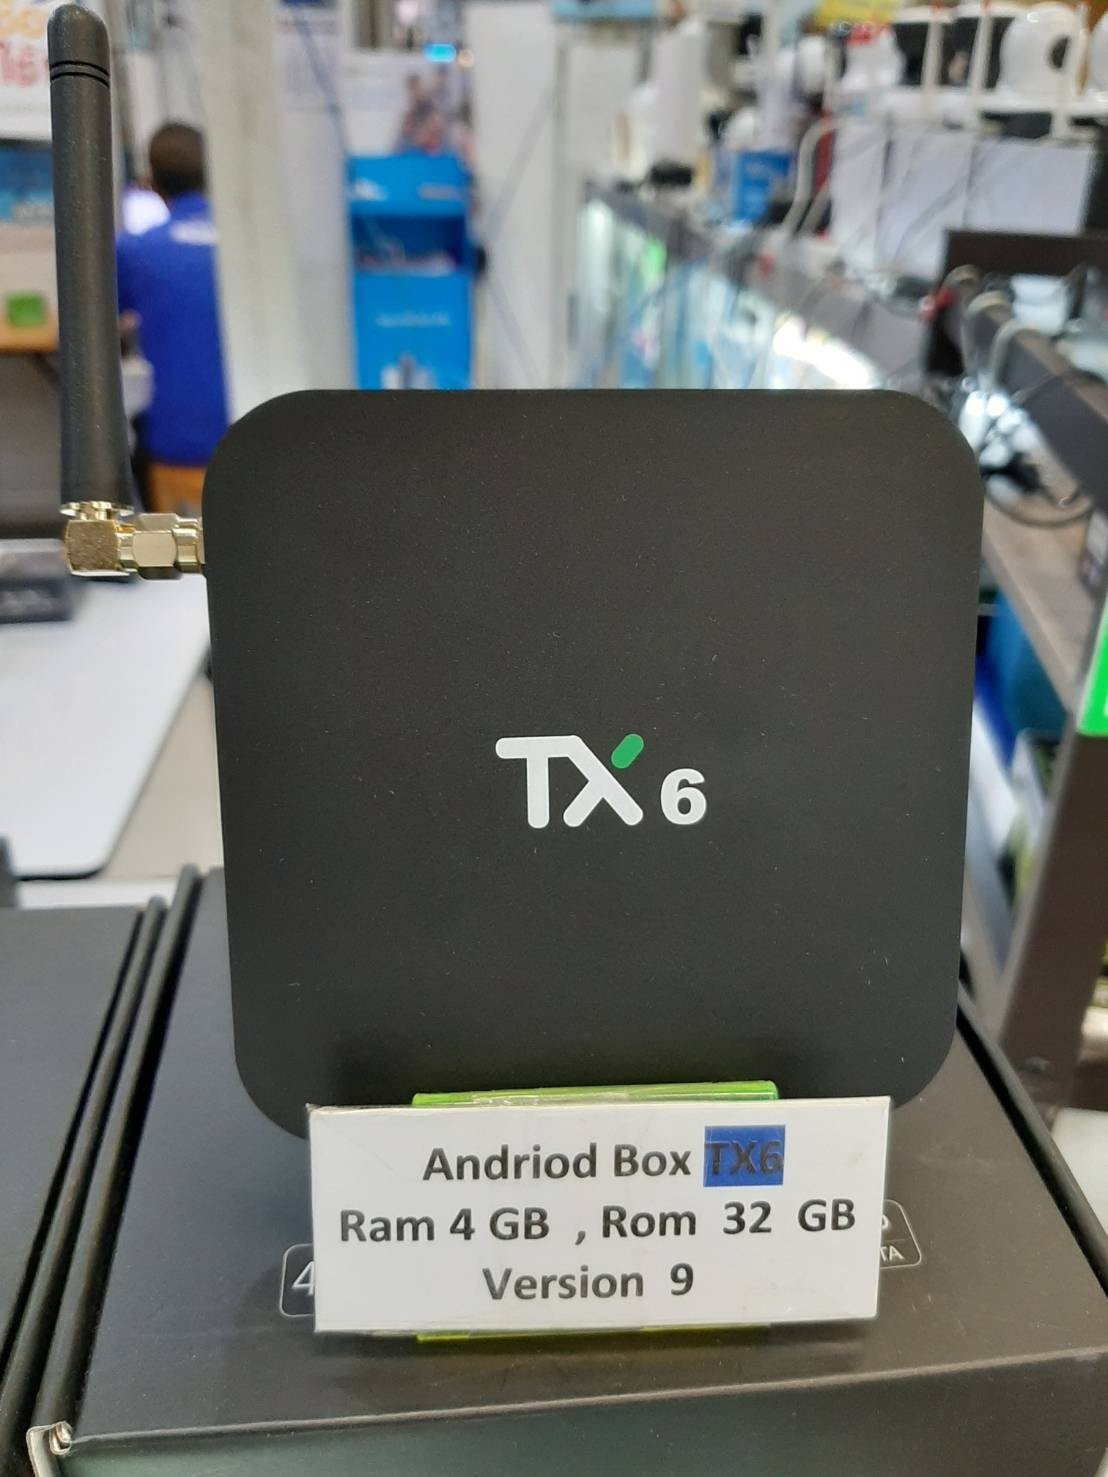 Android Box Version 9 Ram 4GB Rom 32GB ทีวีเป็นสมาร์ททีวี ดูหนัง ฟังเพลง เล่นเน็ต